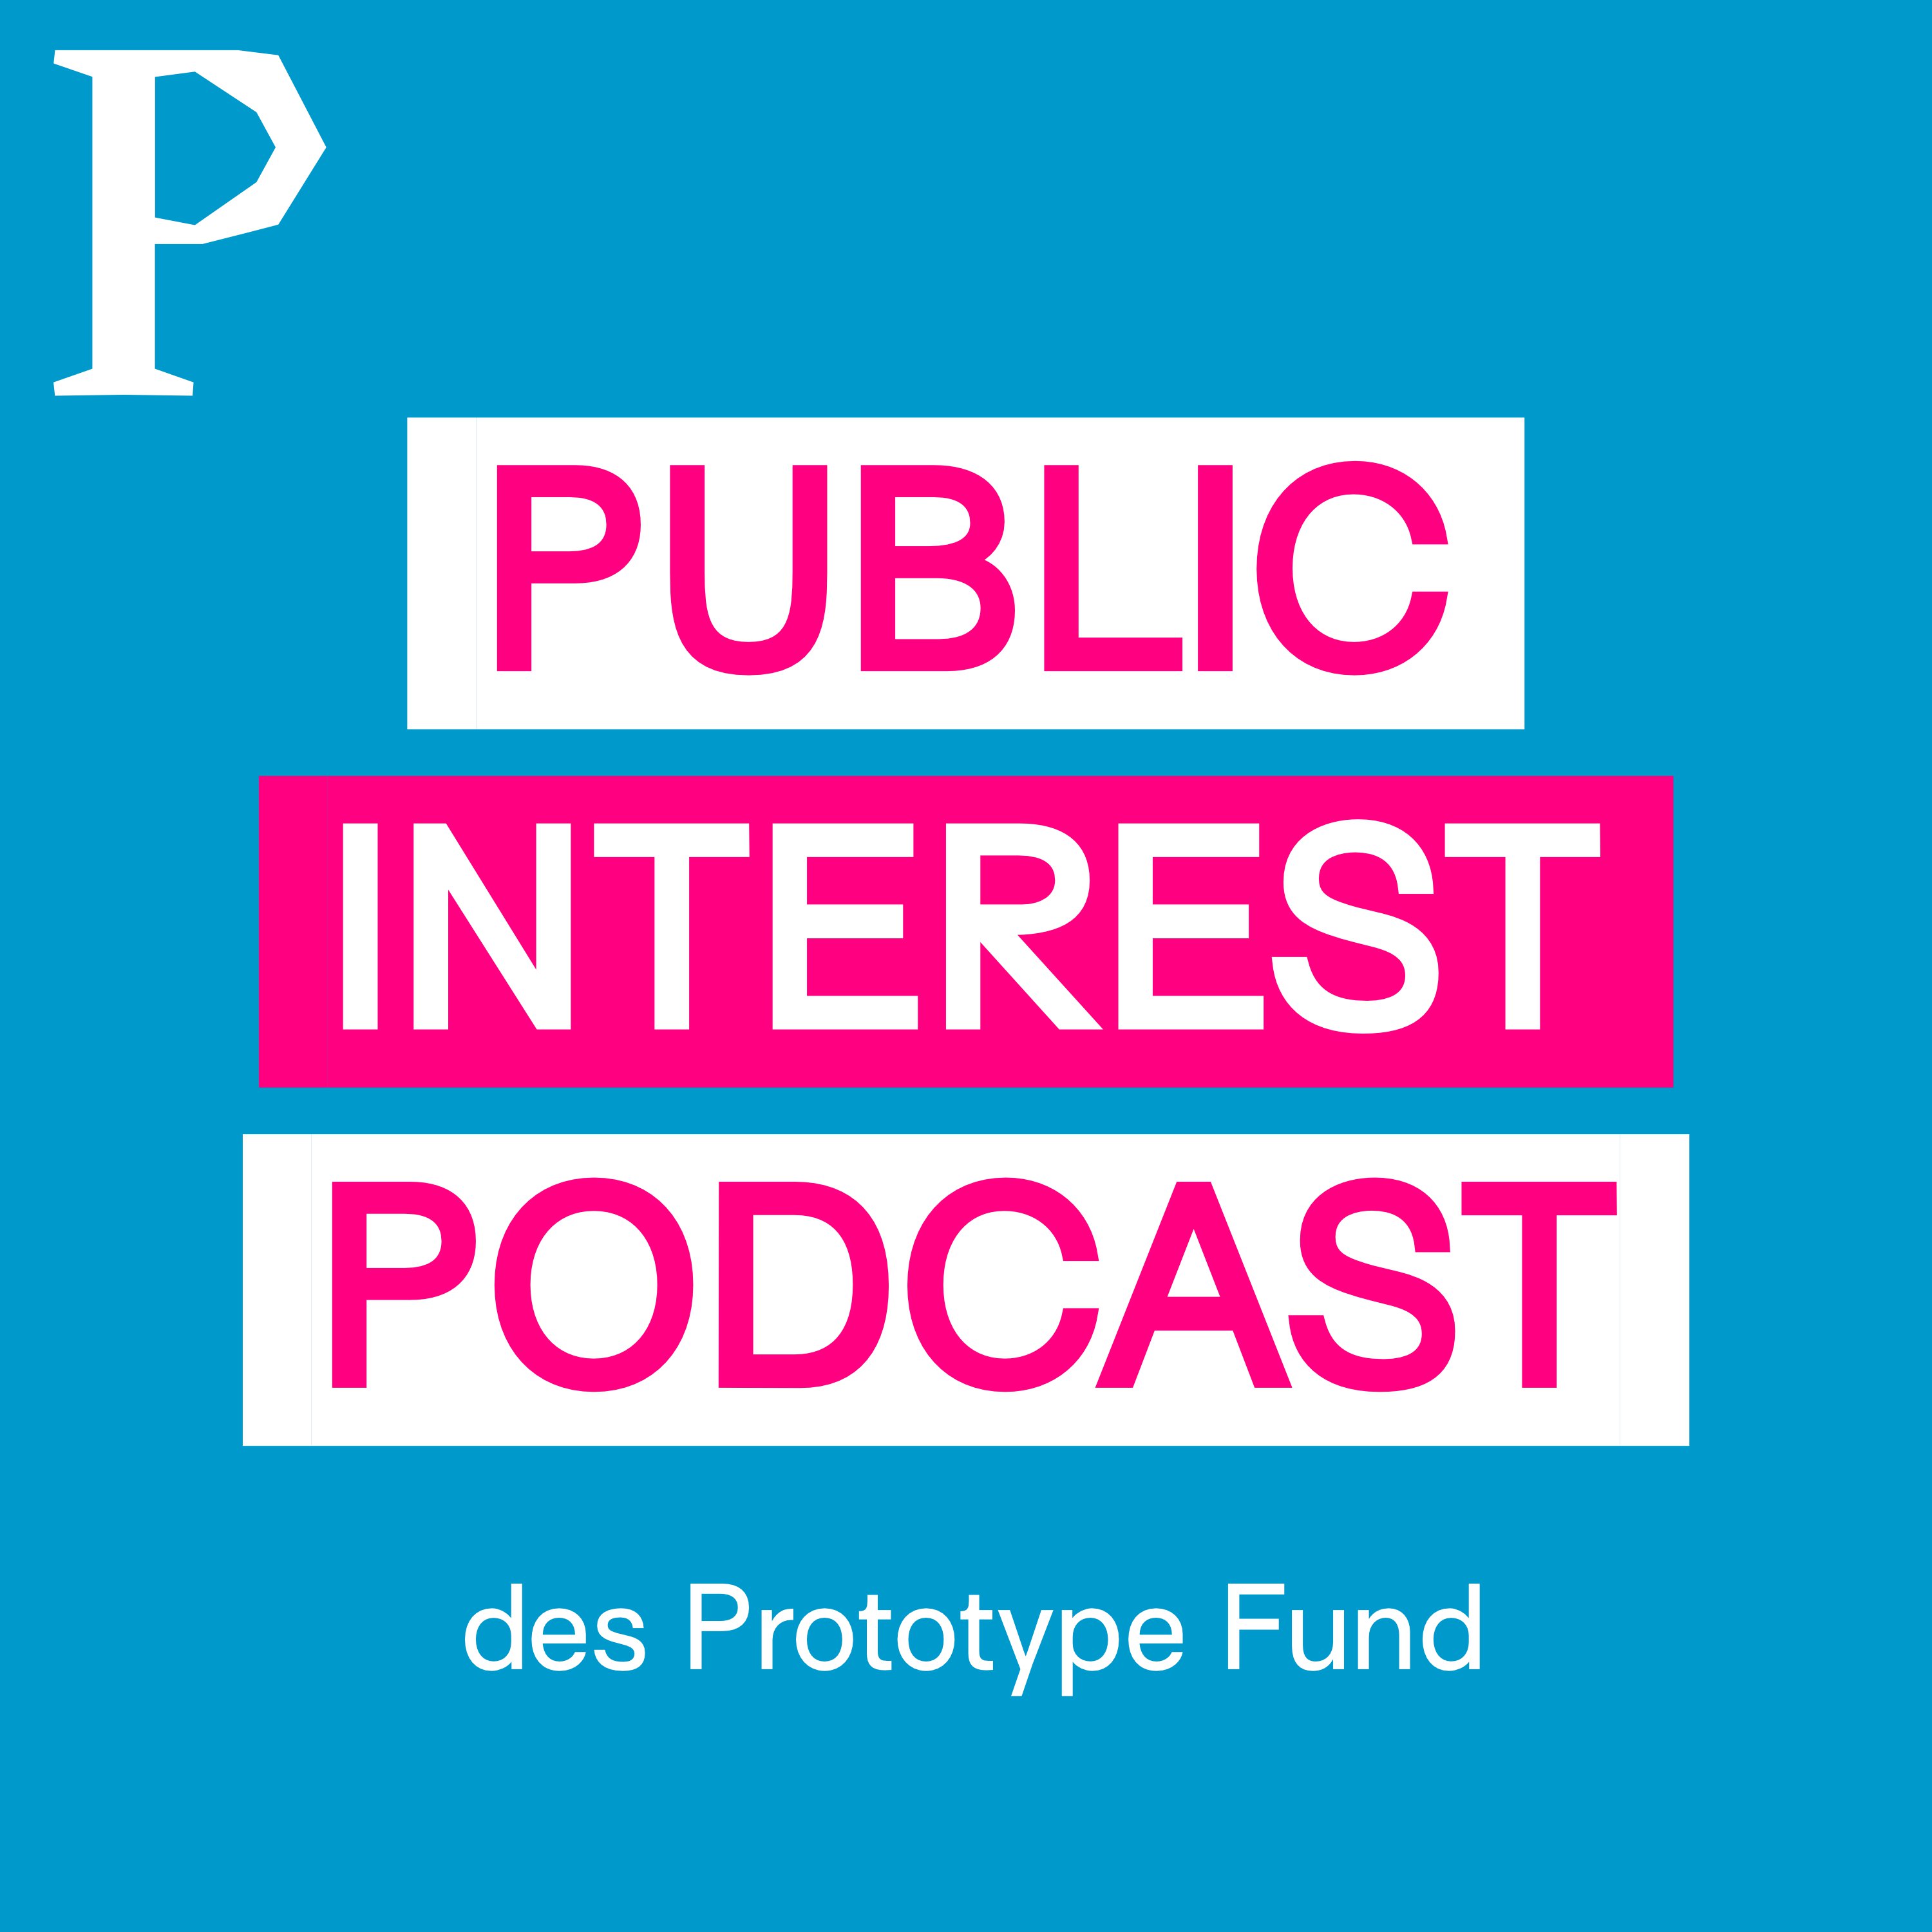 Frank Börncke im Interview beim Podcast "Public Interest Podcast" 